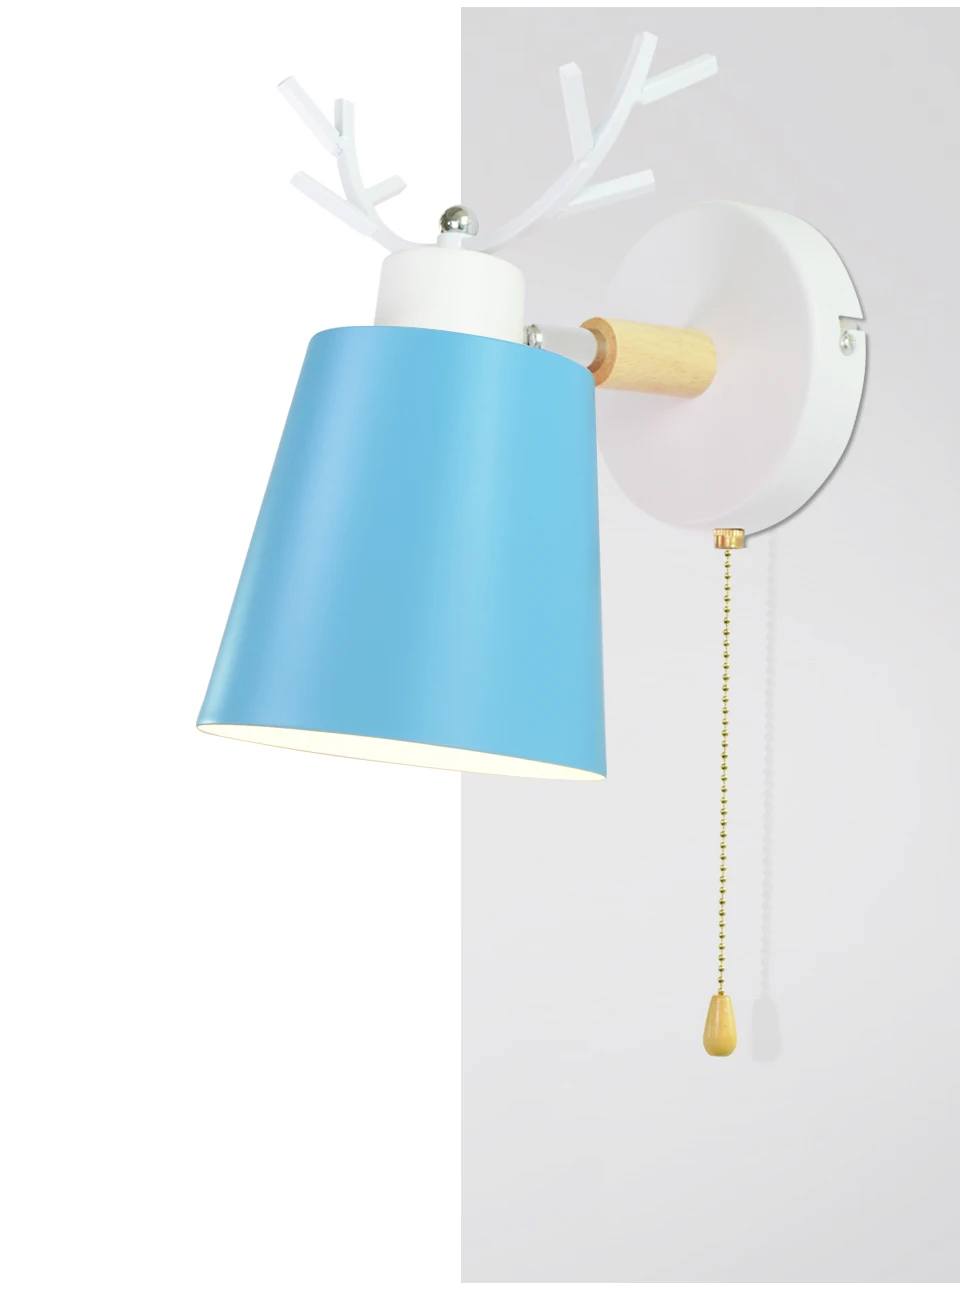 Скандинавские деревянные настенные светильники прикроватная настенная лампа E27 современный бра настенный светильник для спальни macaroon 5 цветов 85-285 в с выключатель с цепочкой